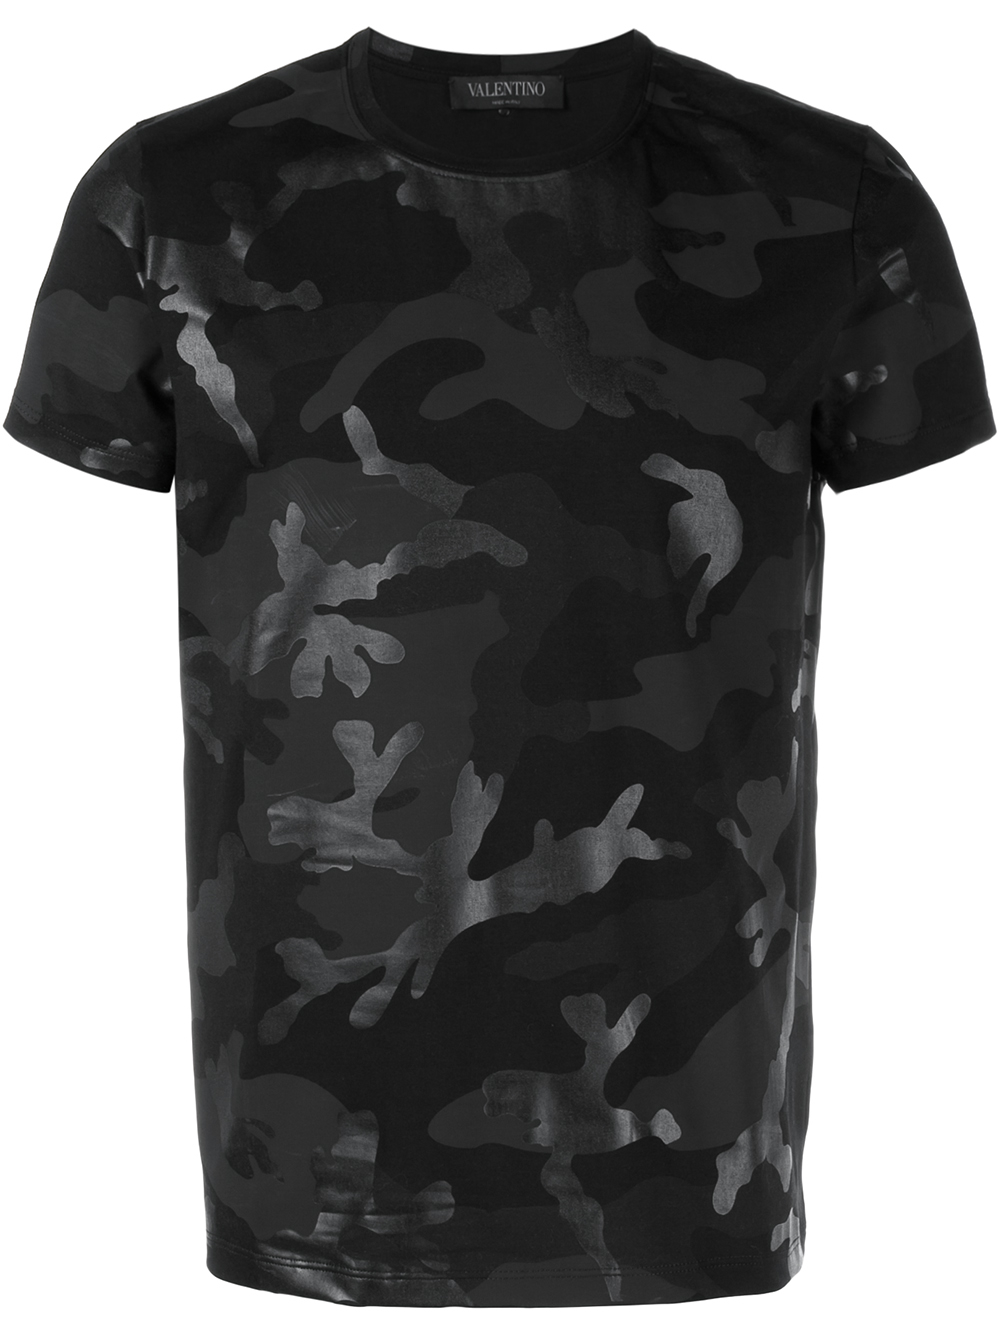 mental Indføre Selvrespekt Valentino Camouflage T-shirt in Black for Men | Lyst